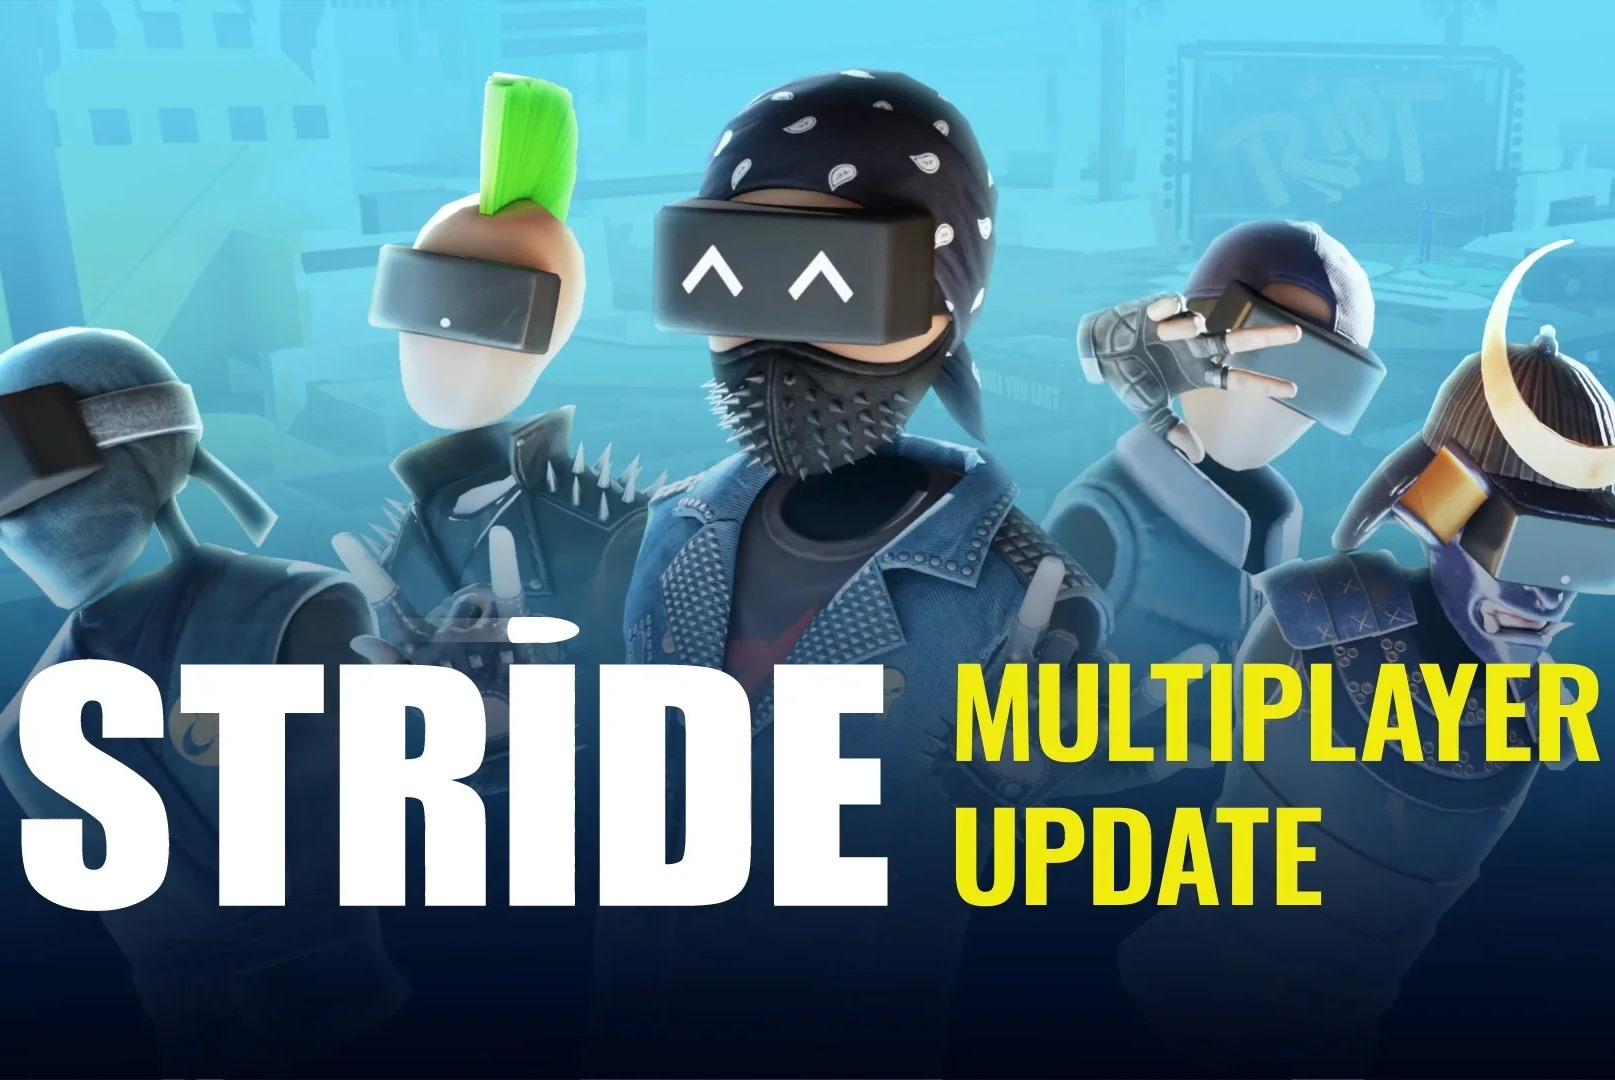 跑酷游戏《Stride》将于6月迎来多人模式更新